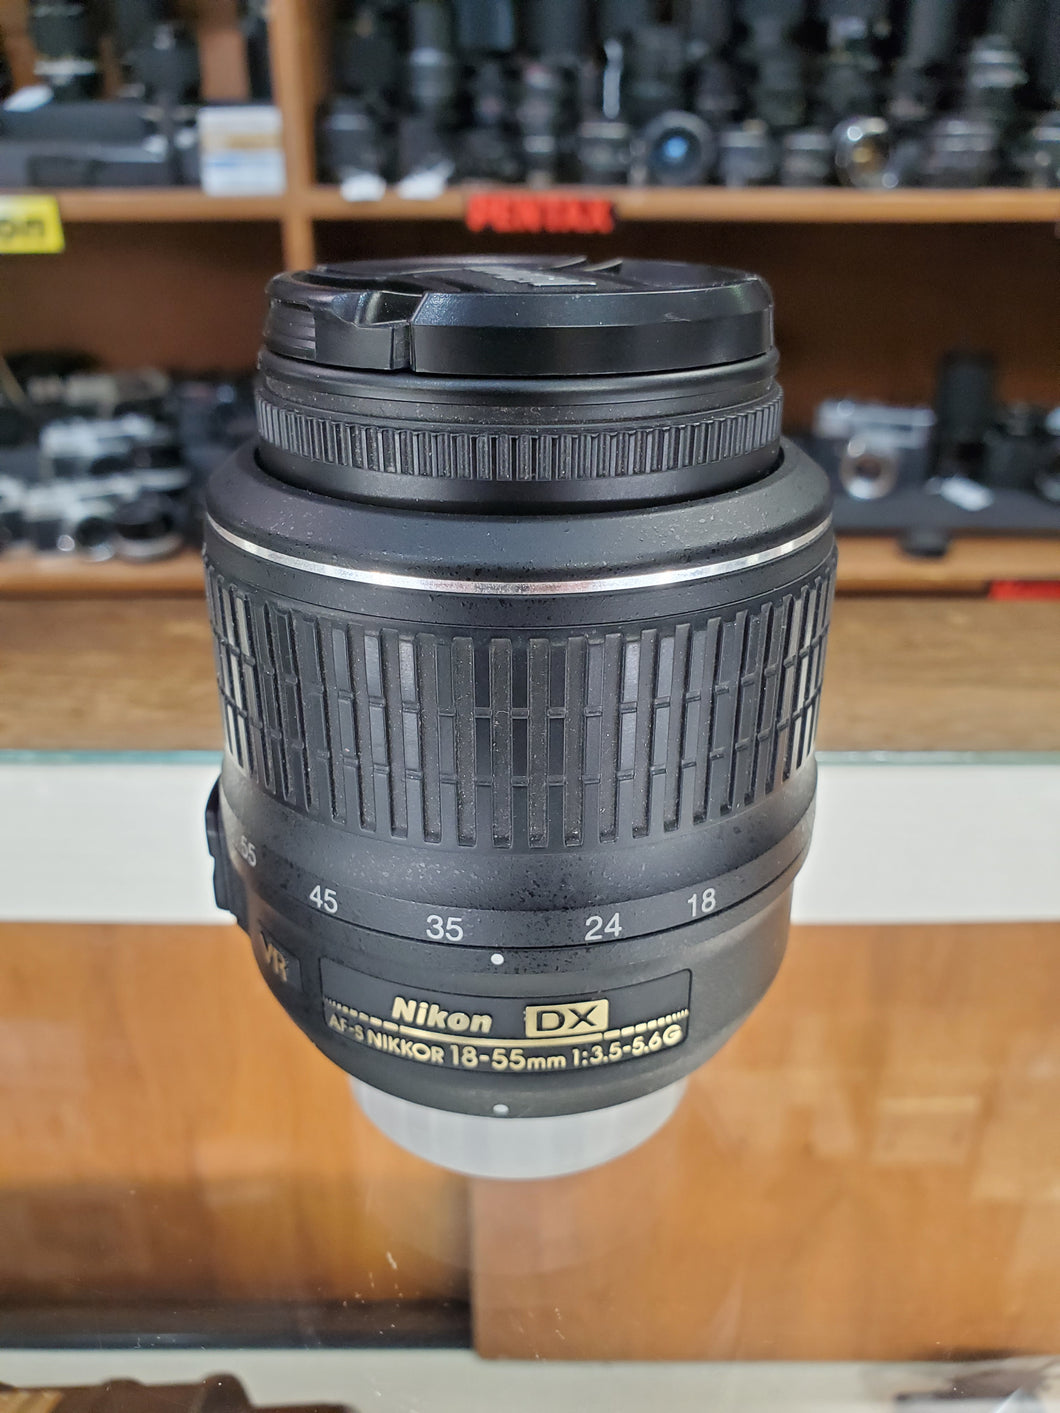 Nikon 18-55mm f/3.5-5.6G AF-S DX VR Nikkor Zoom Lens - Used